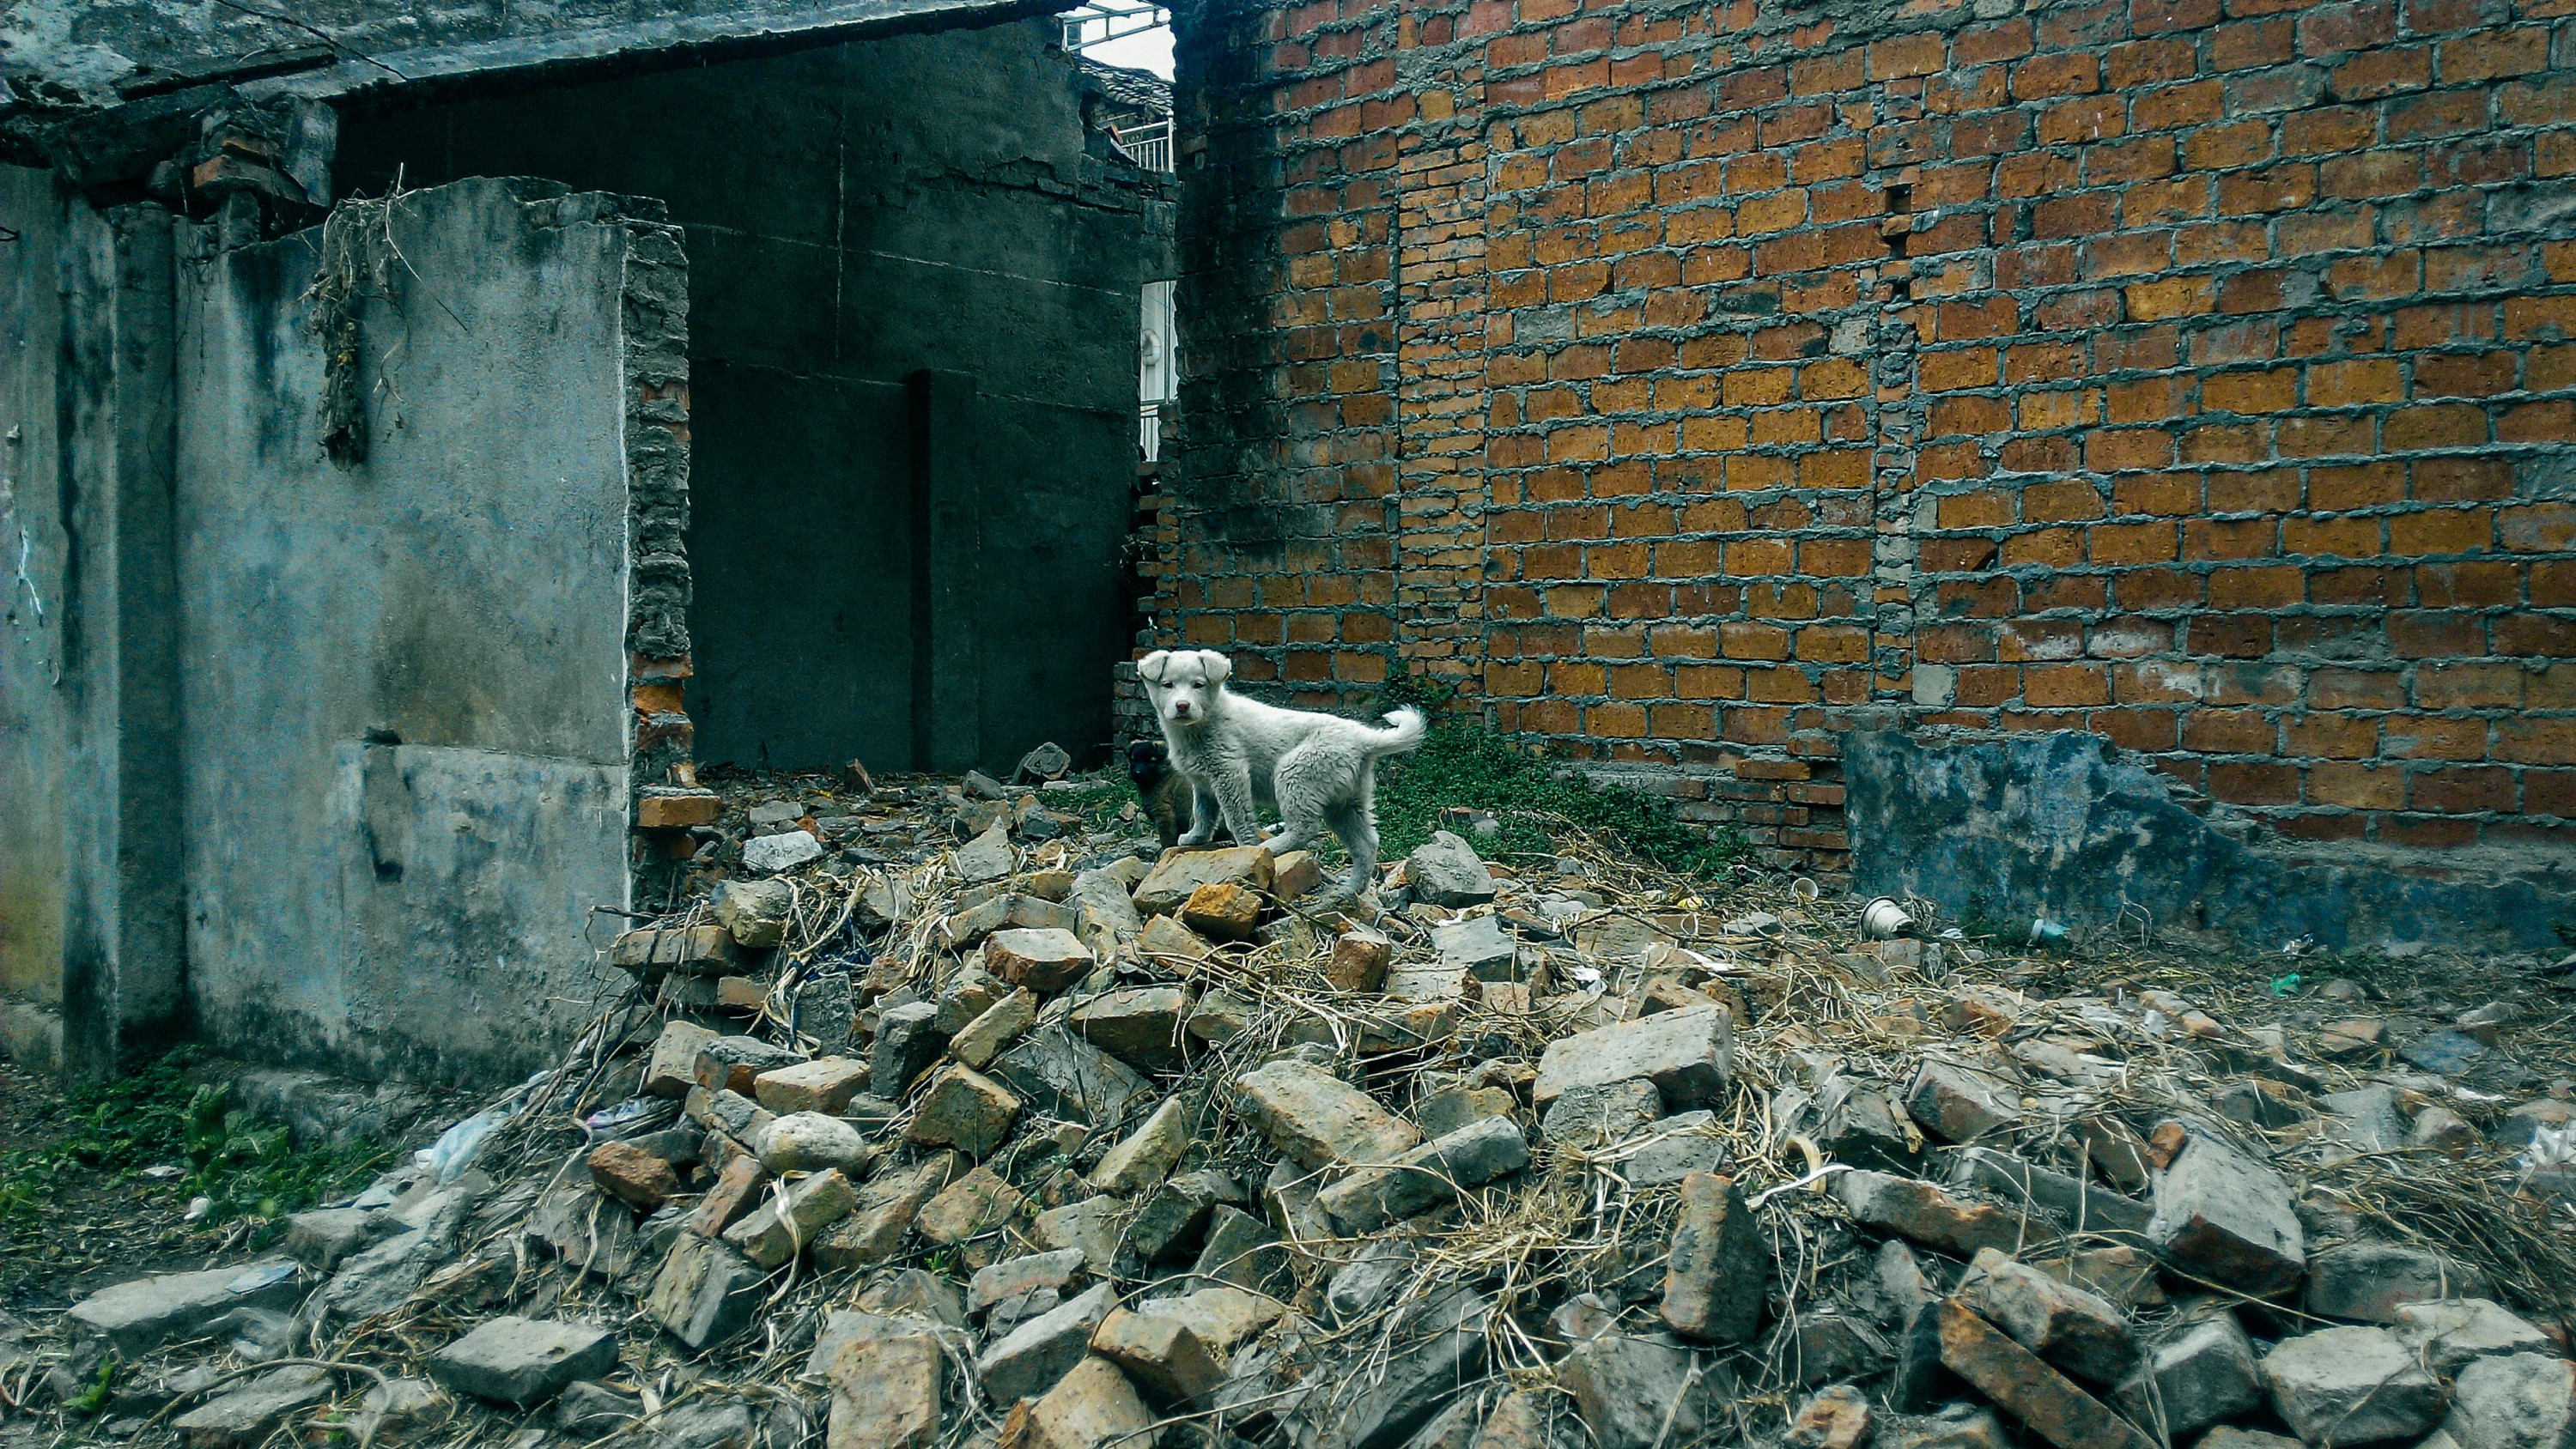 在四川唐家河國家級自然保護區附近，我遇到拆遷後的廢墟中的小狗。牠們多半是主人搬家後所留下的，正好奇地看著我。（2017年，四川青川縣青溪鎮，龍緣之攝）